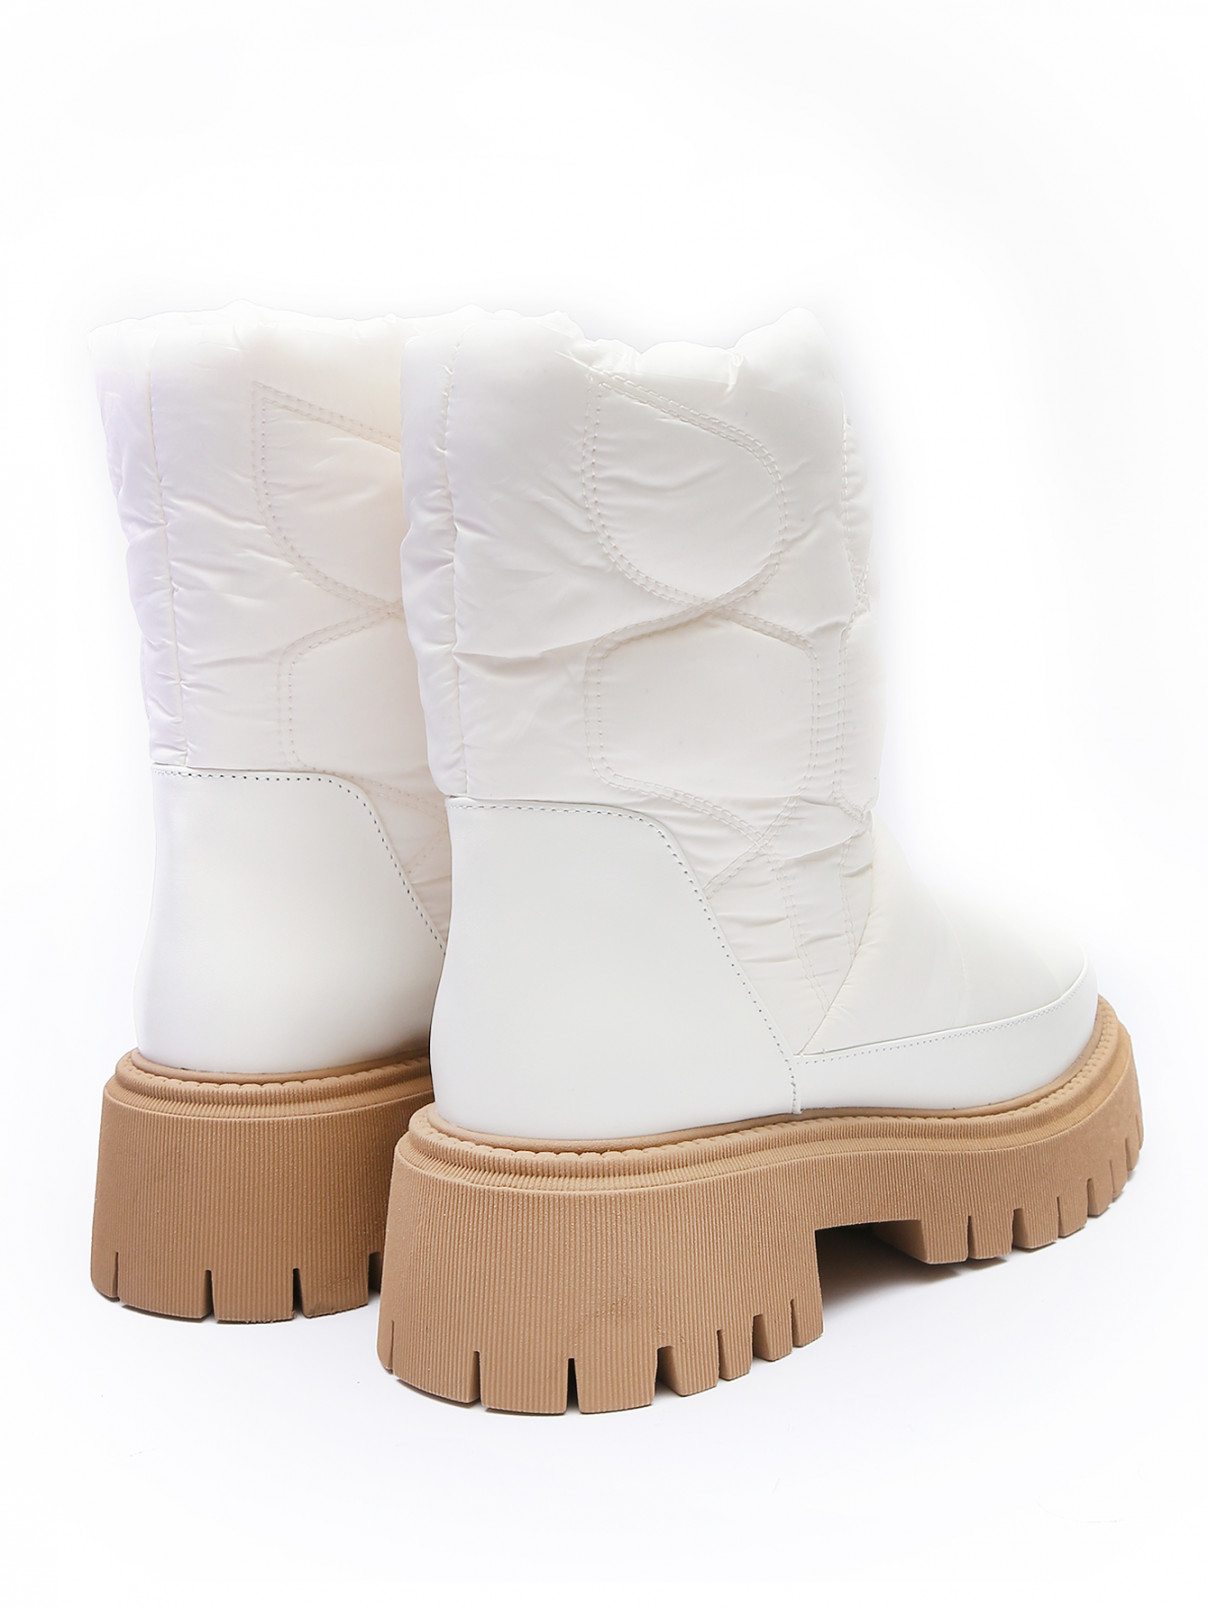 Комбинированные ботинки из текстиля и кожи Dorothee Schumacher  –  Обтравка2  – Цвет:  Белый